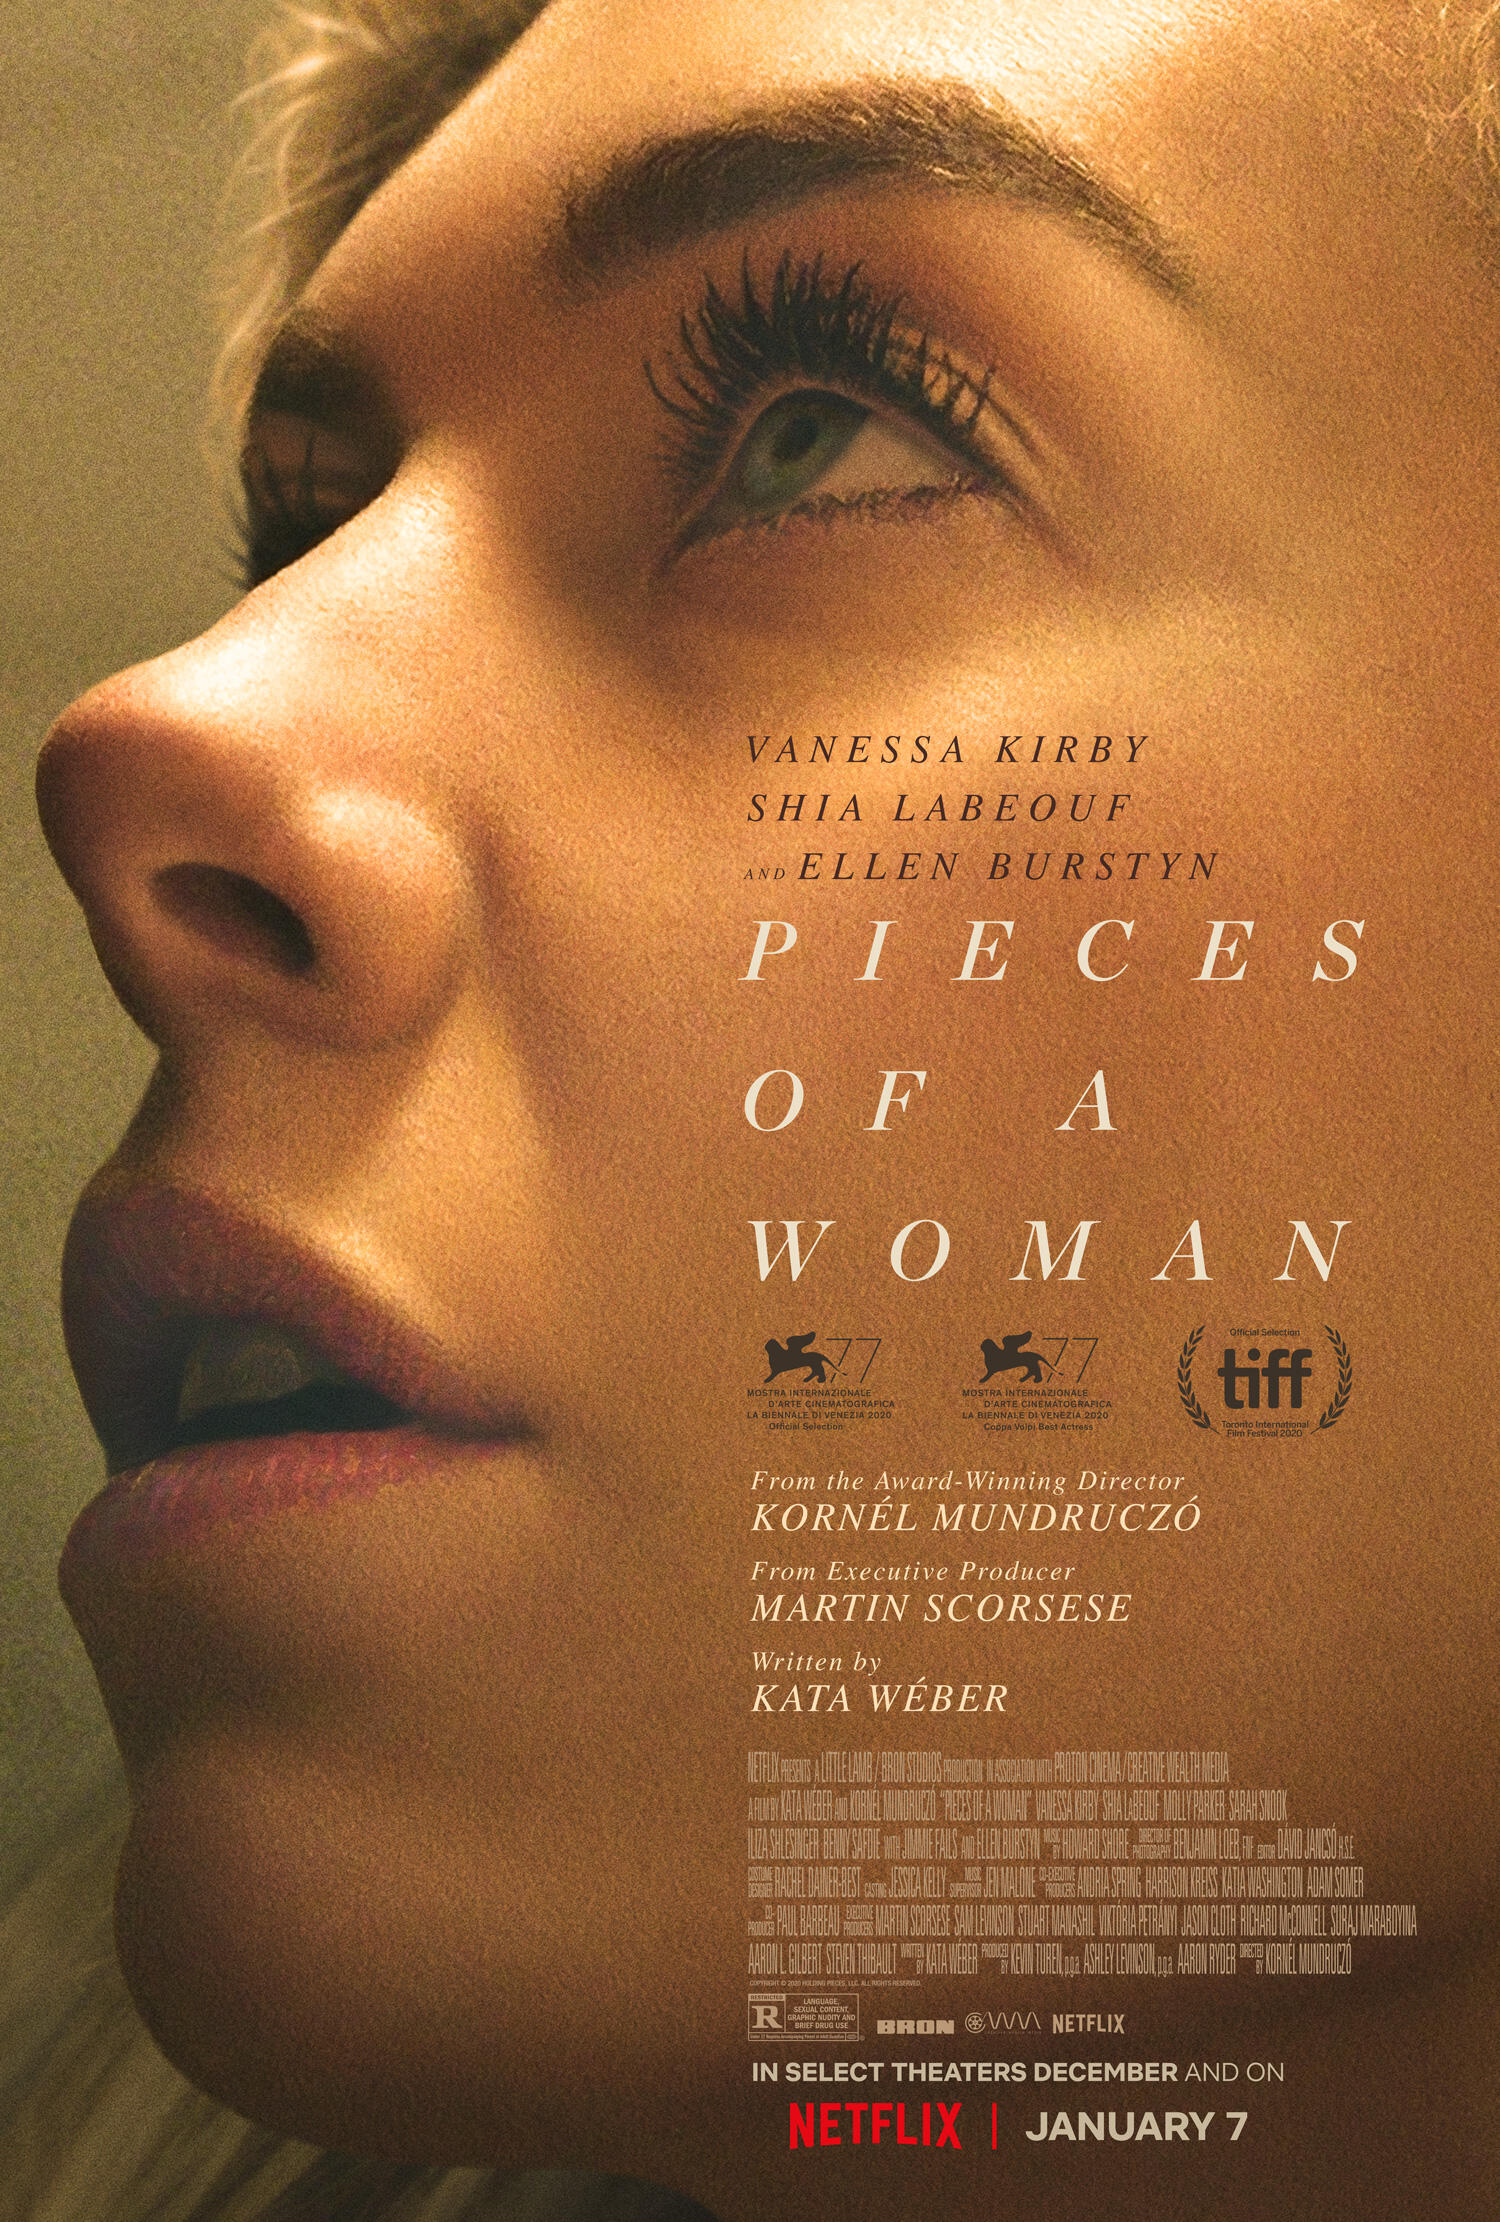 Pieces of a Woman: Um retrato raro de um sofrimento comum